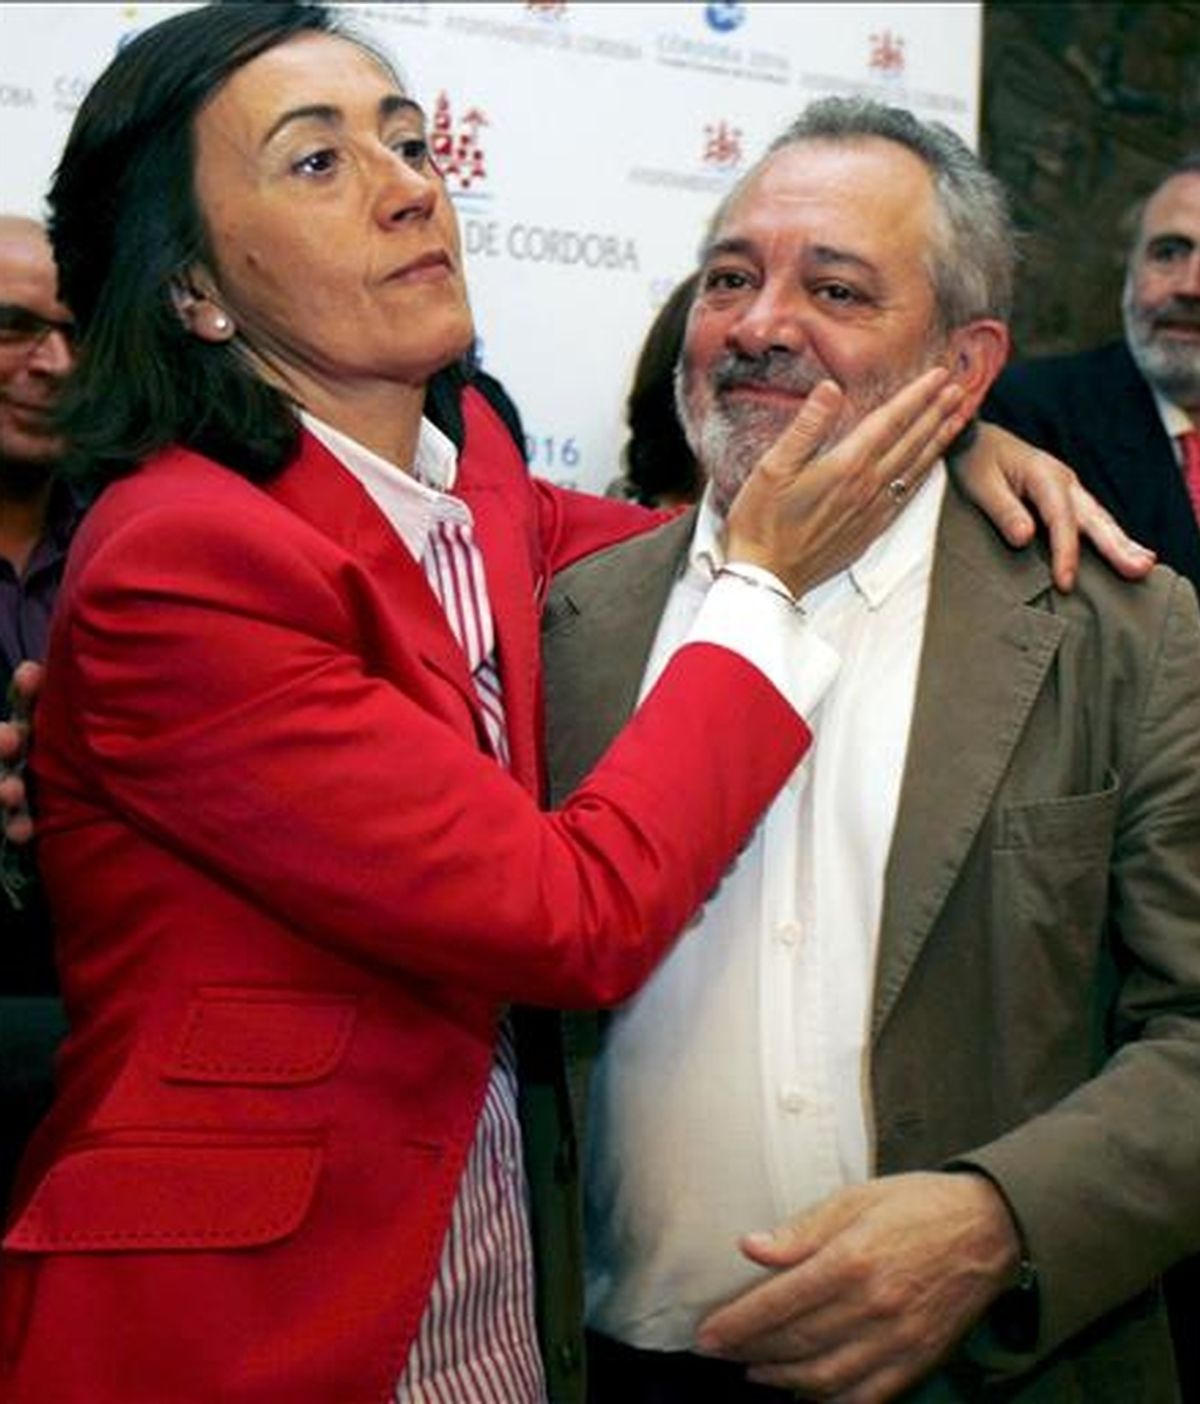 Rosa Aguilar, alcaldesa de Córdoba durante diez años, junto a su segundo teniente de alcalde y a quien ha señalado como su posible sucesor, Andrés Ocaña, hoy durante el acto en el que entregó su acta de concejal en el ayuntamiento. EFE